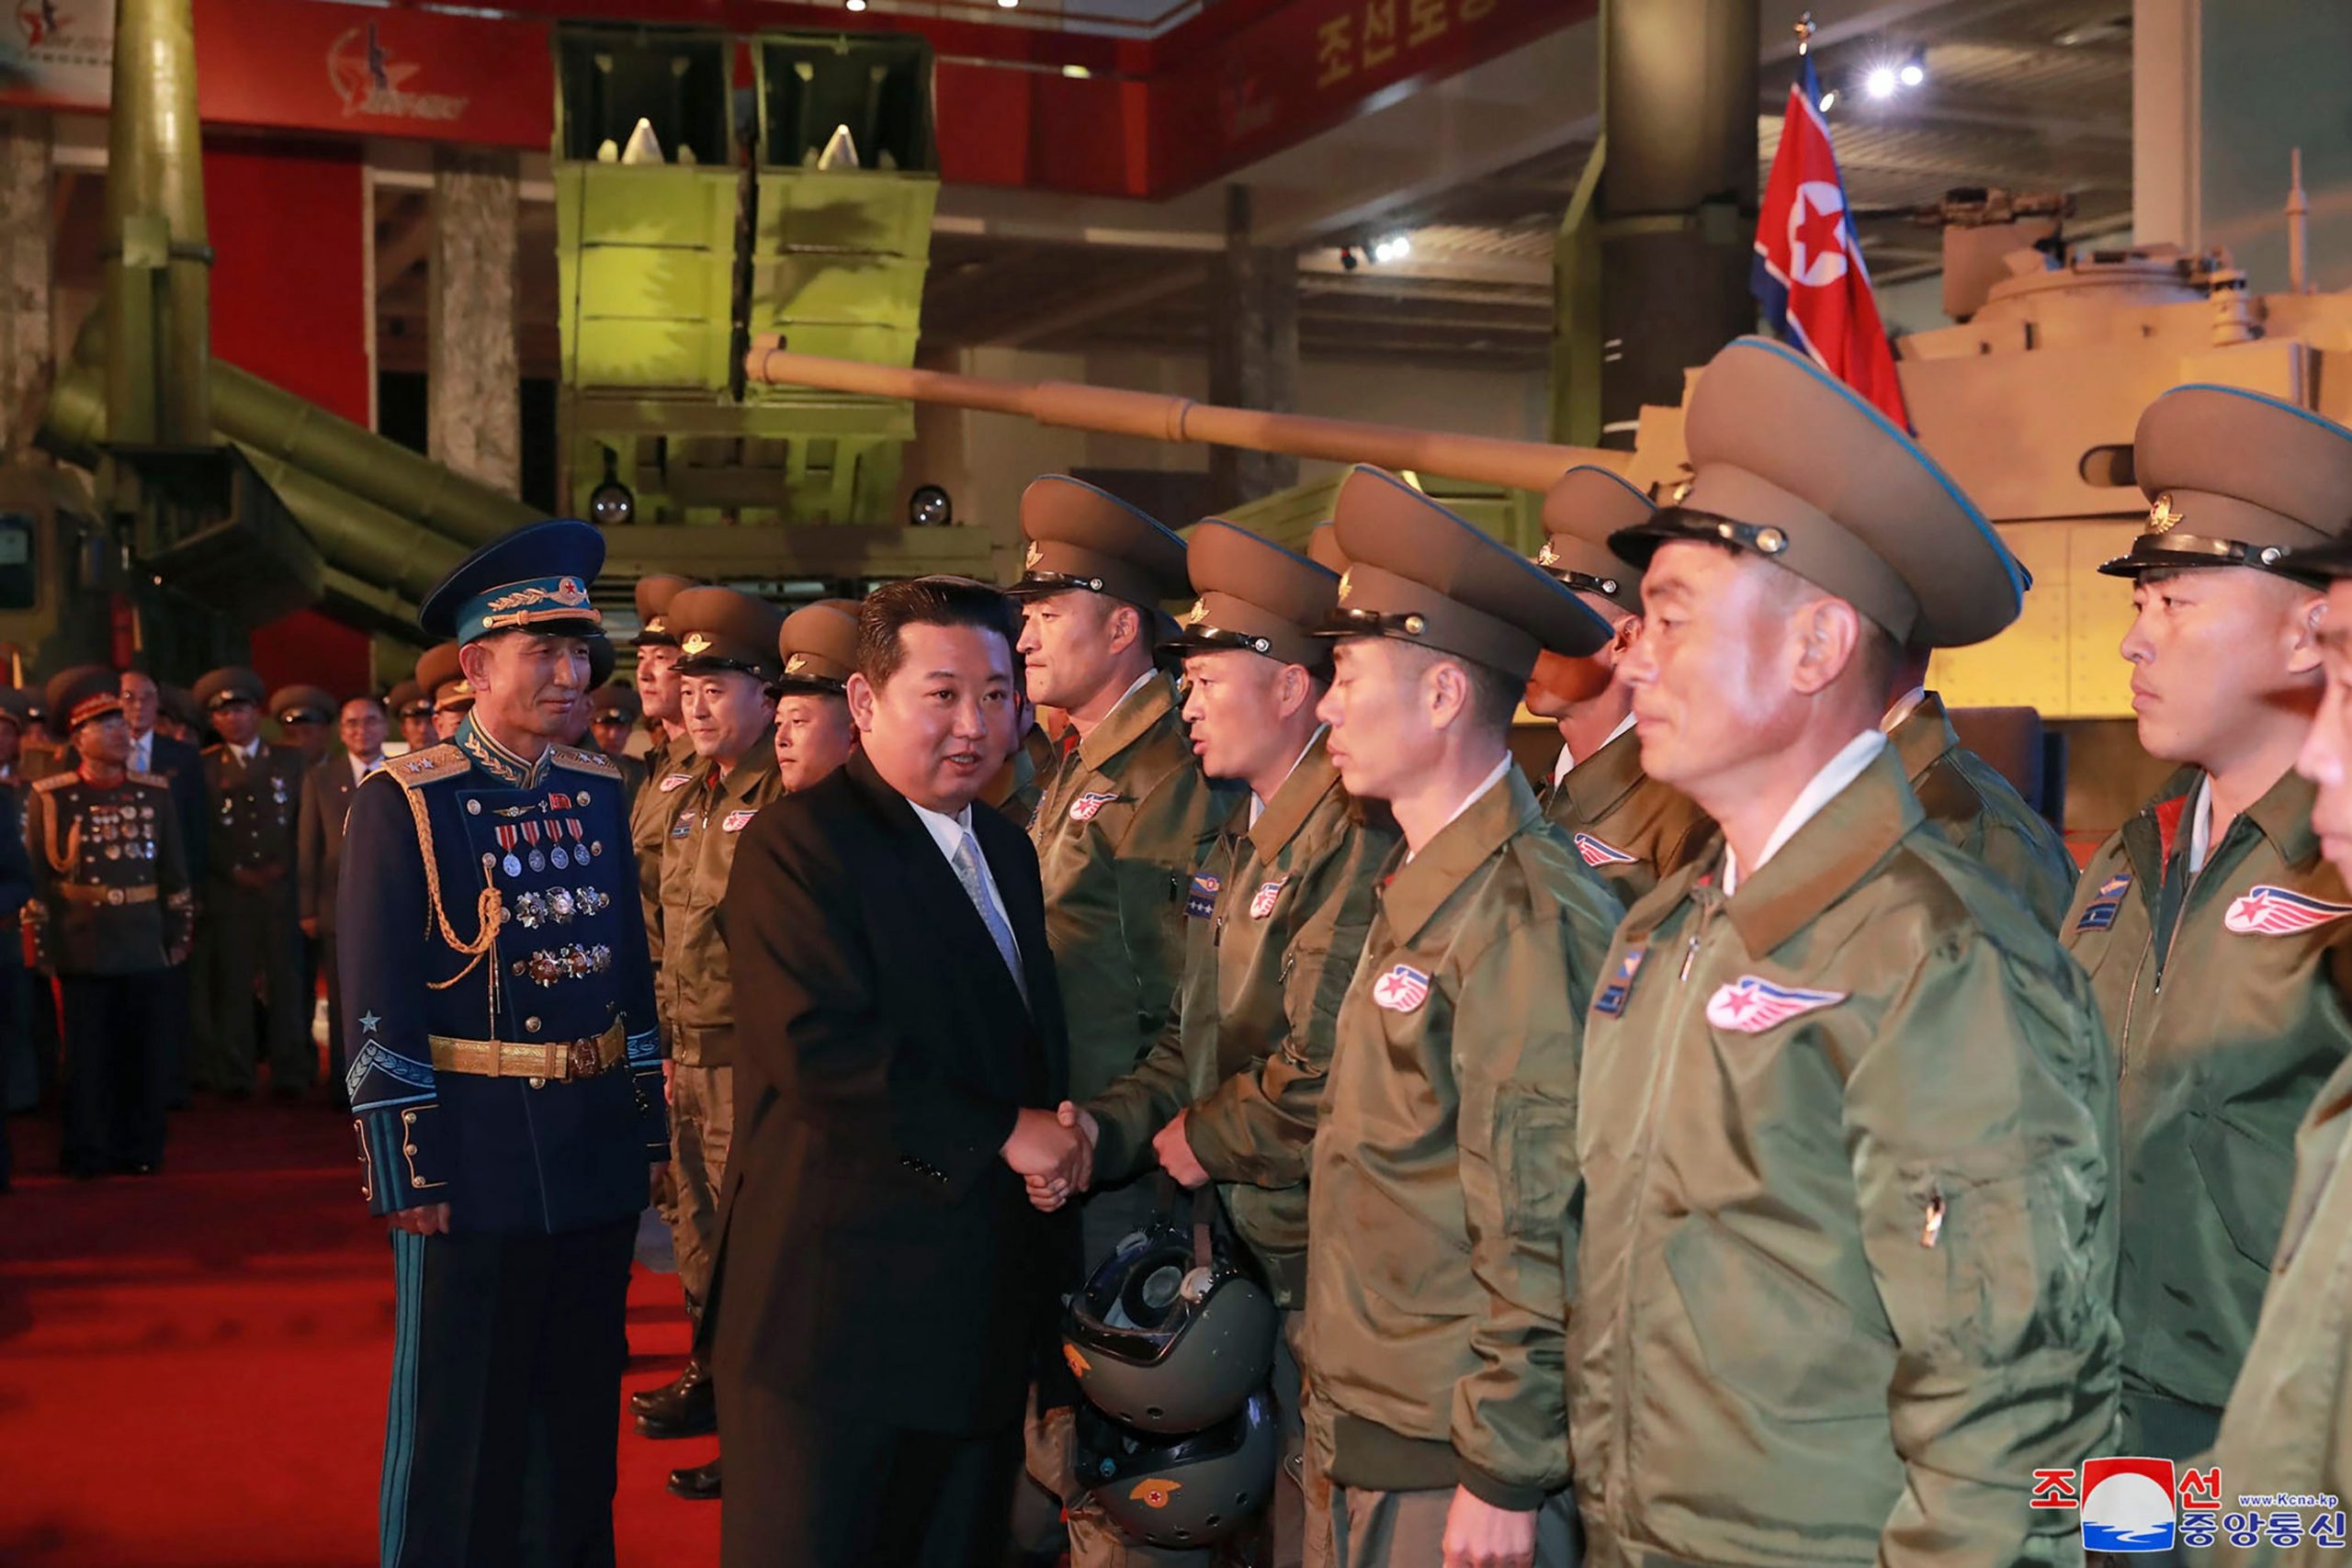 Kim Jong Un meeting soldiers